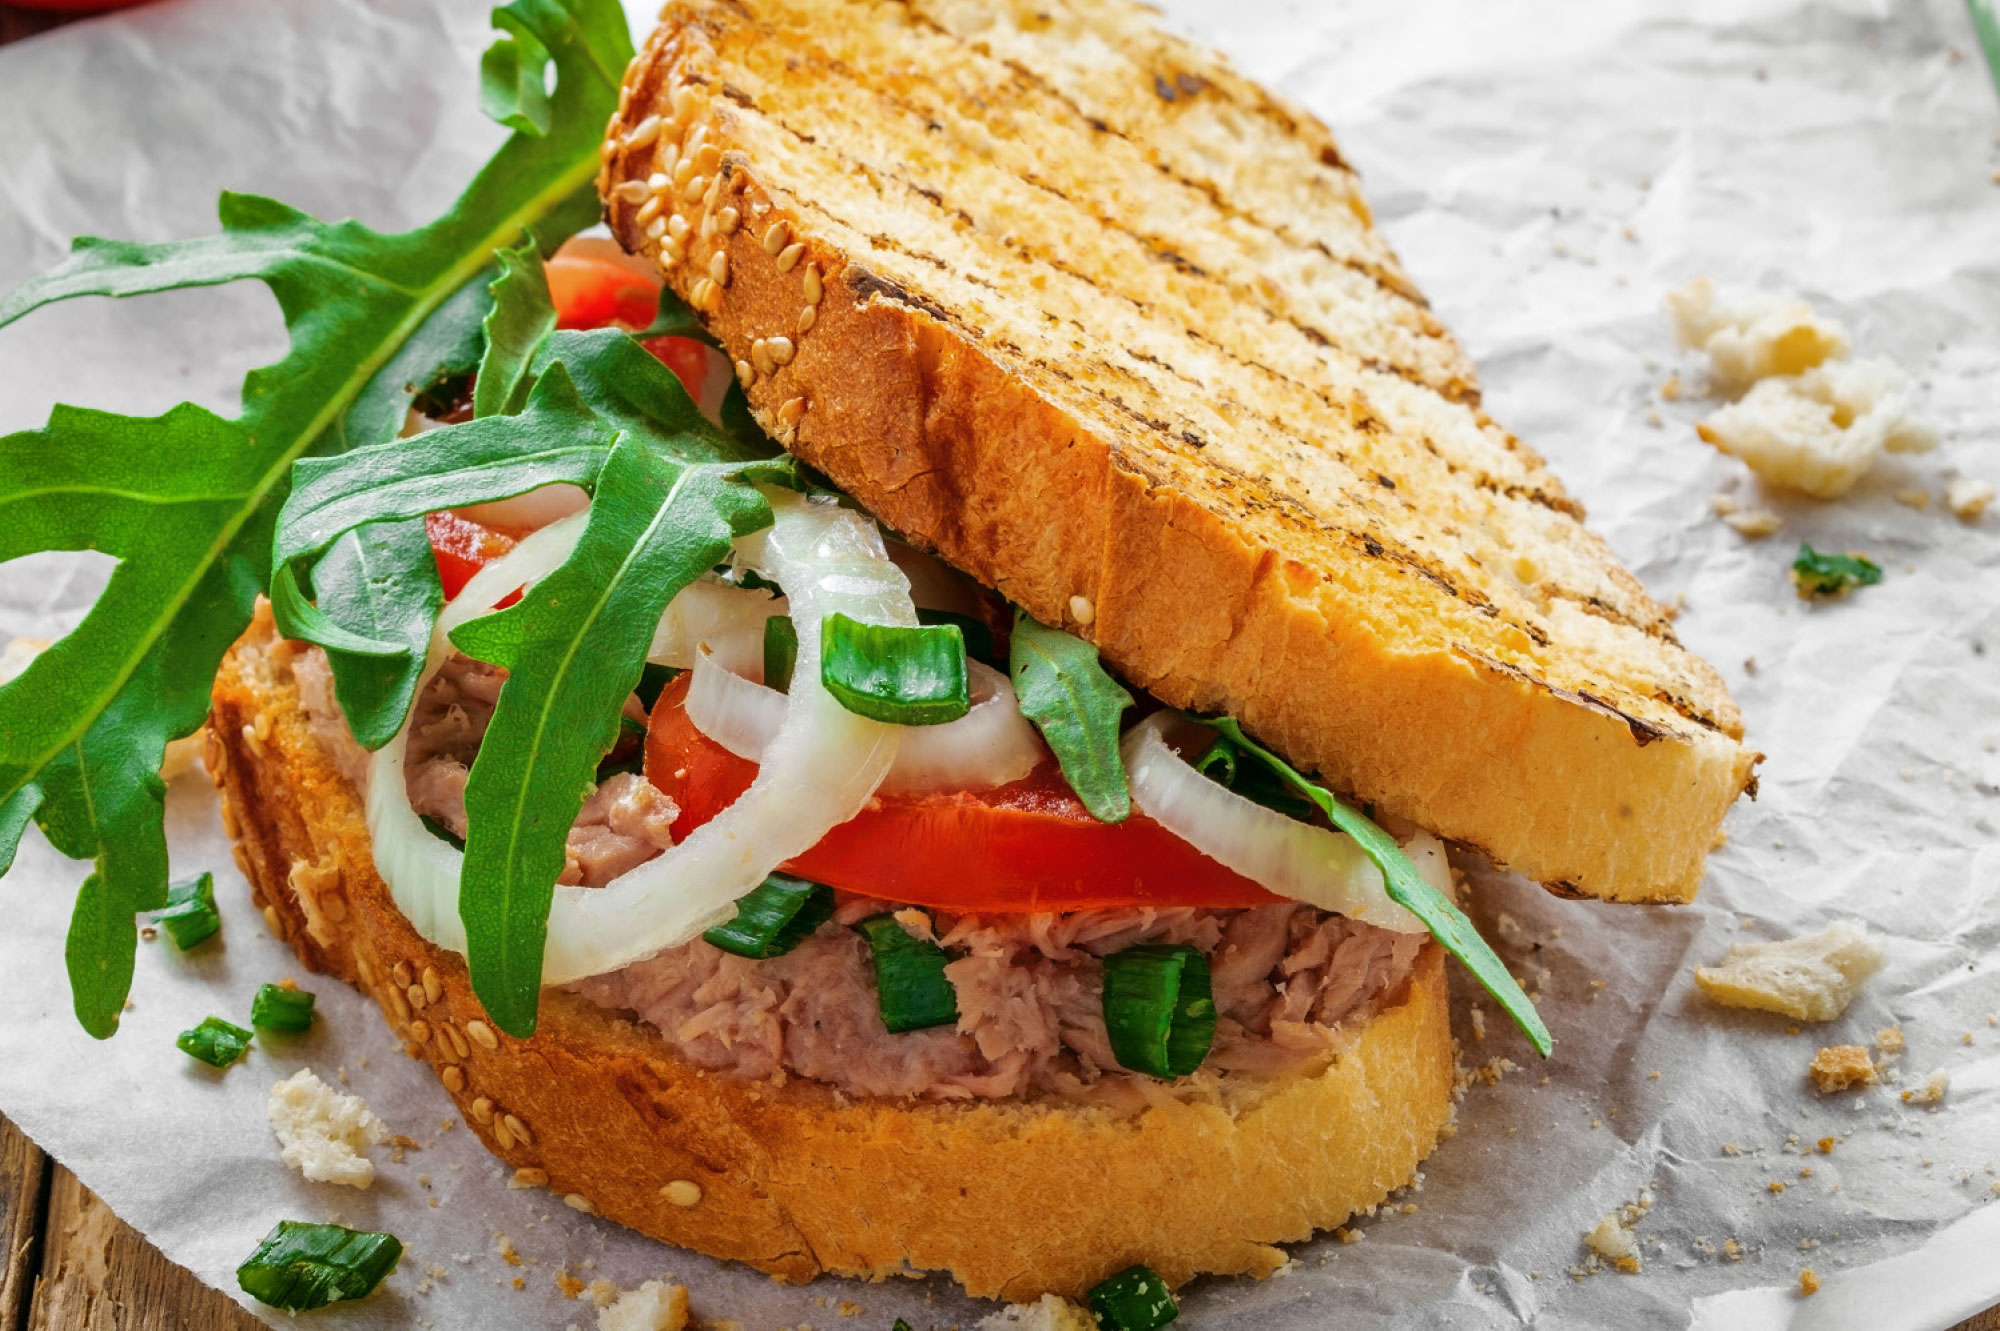 Recept broodje vegetarische tonijnsalade met lenteui | Bedrijfscatering | De Groene Artisanen